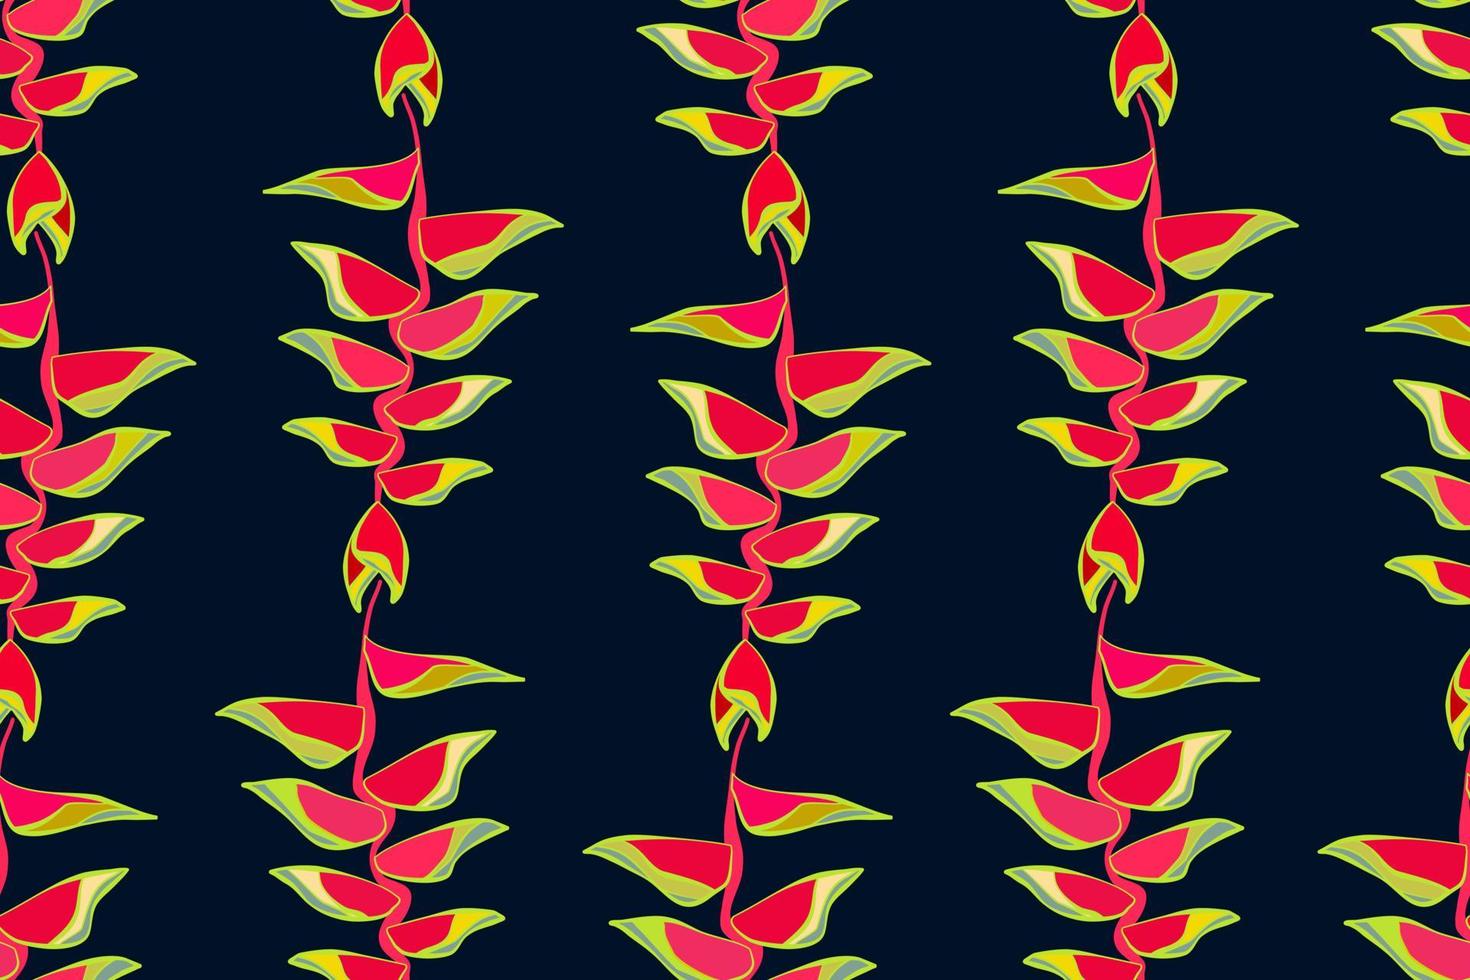 modern heliconia vogel van paradijs , anthurium, blad naadloos patroon.tropisch oerwoud bladeren. exotisch planten, vector illustratie modern patroon naadloos hand- tekening ontwerp voor kleding stof interieur, textiel